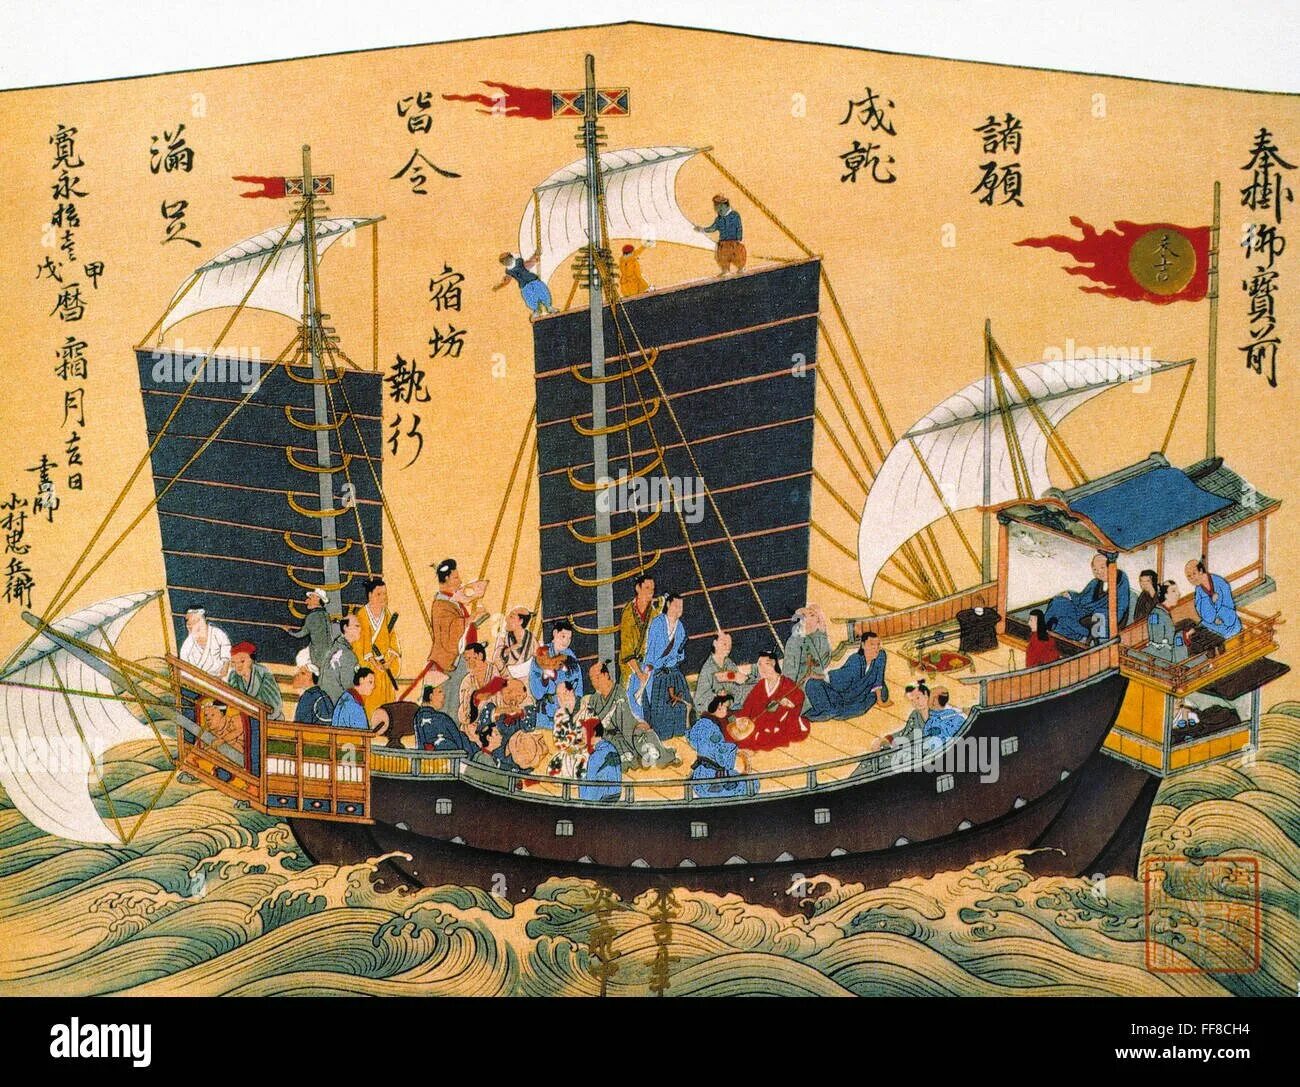 Китайское судно с парусами циновками 6. Корабль Чжэн ши. Вокоу - японские морские пираты. Китайская Джонка 17 век. Японские мореплаватели 17 век.